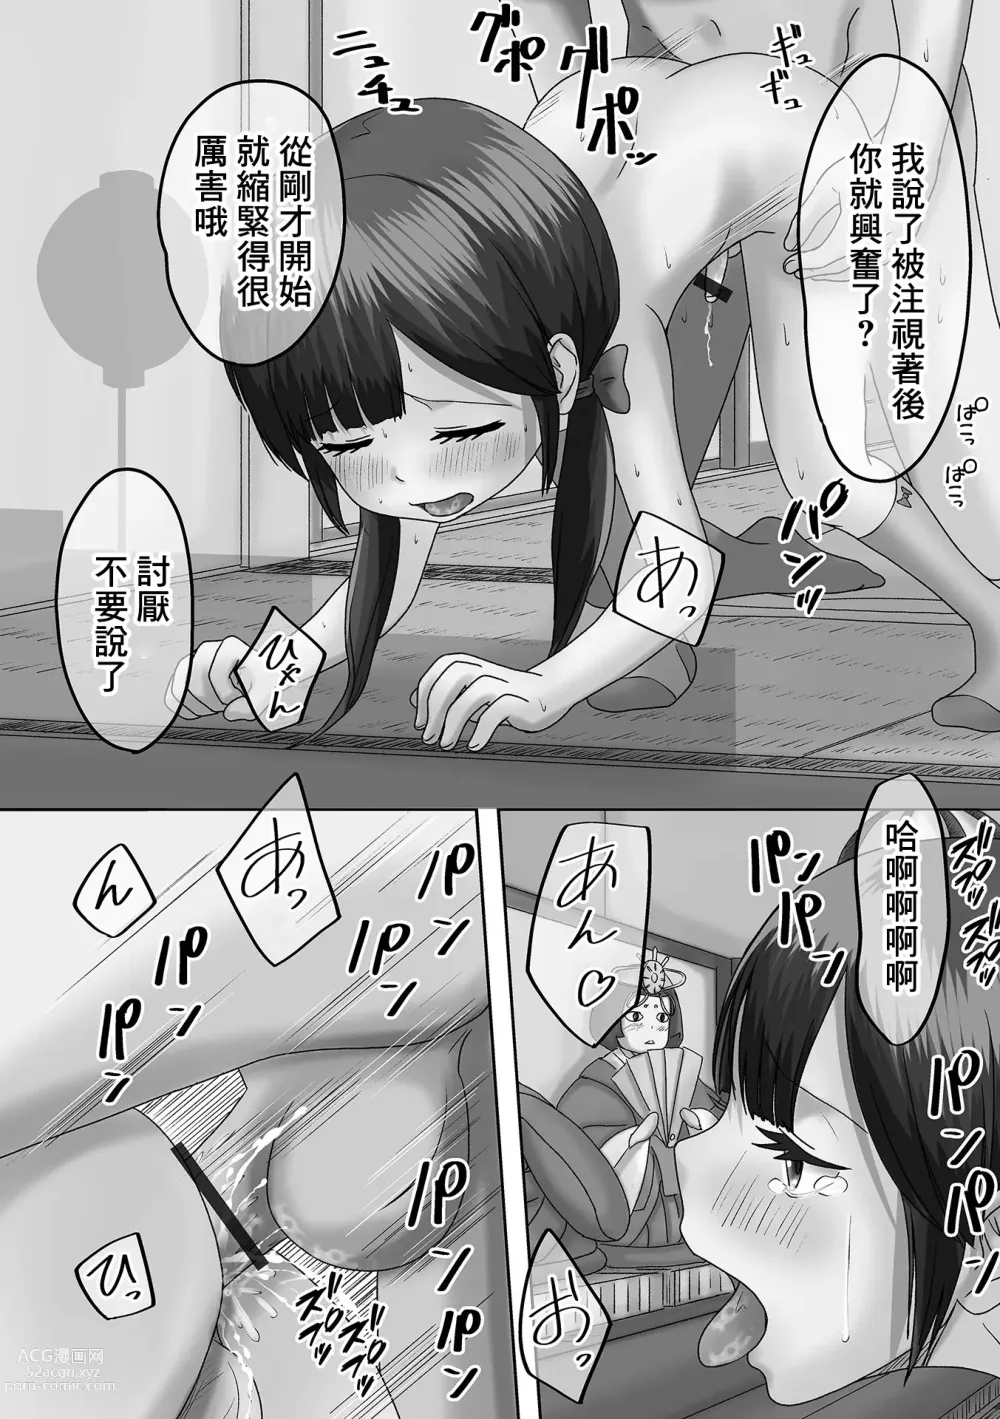 Page 14 of manga Akari o Tsukemasho Bonbori ni